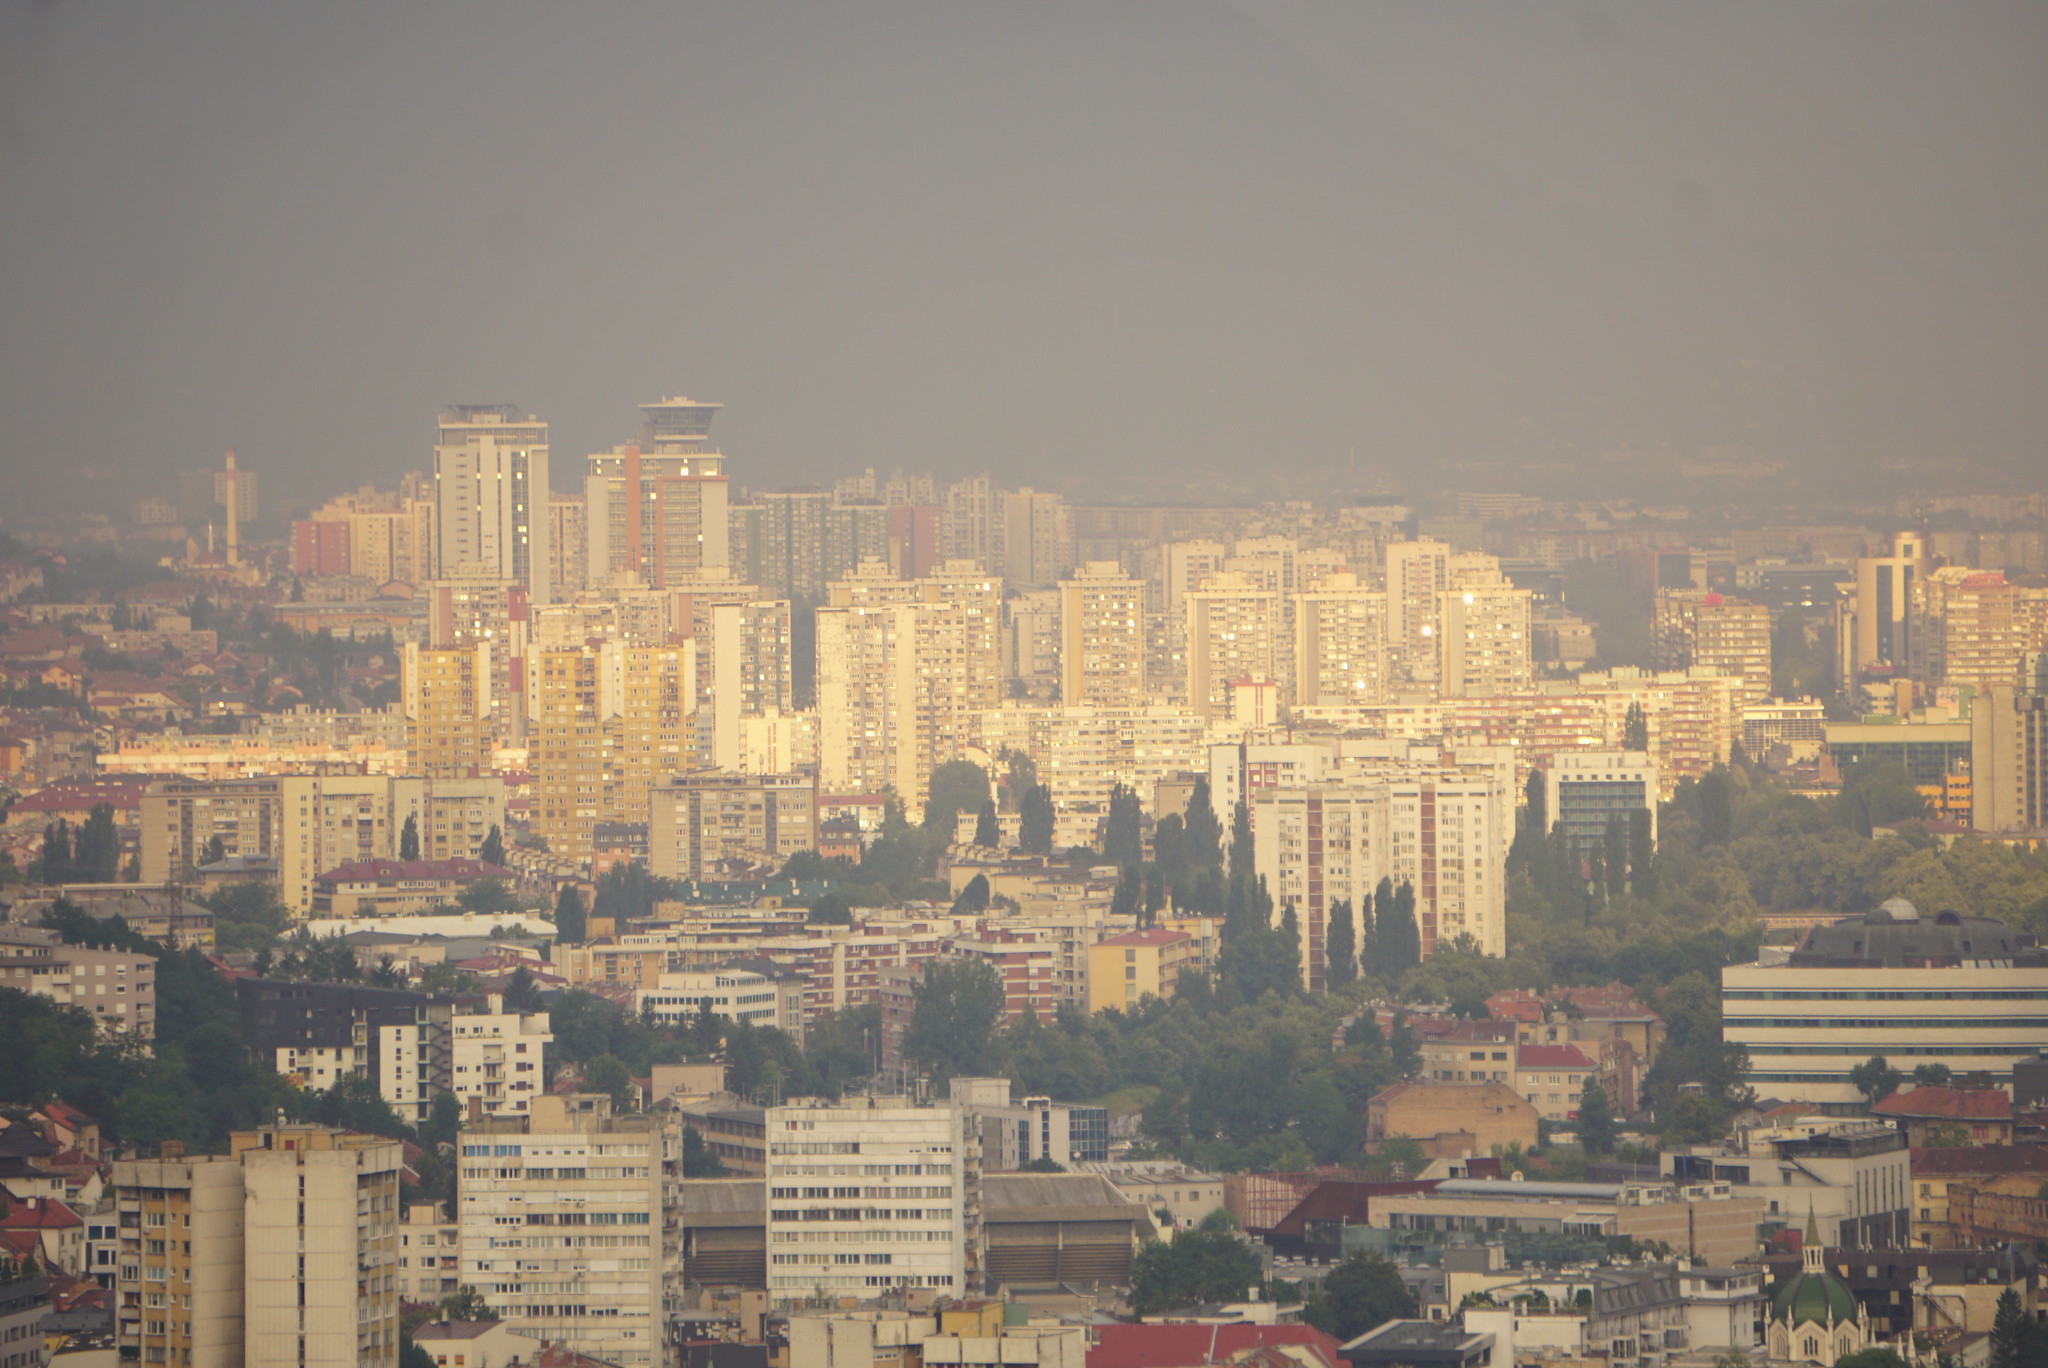 Cityscape of Sarajevo